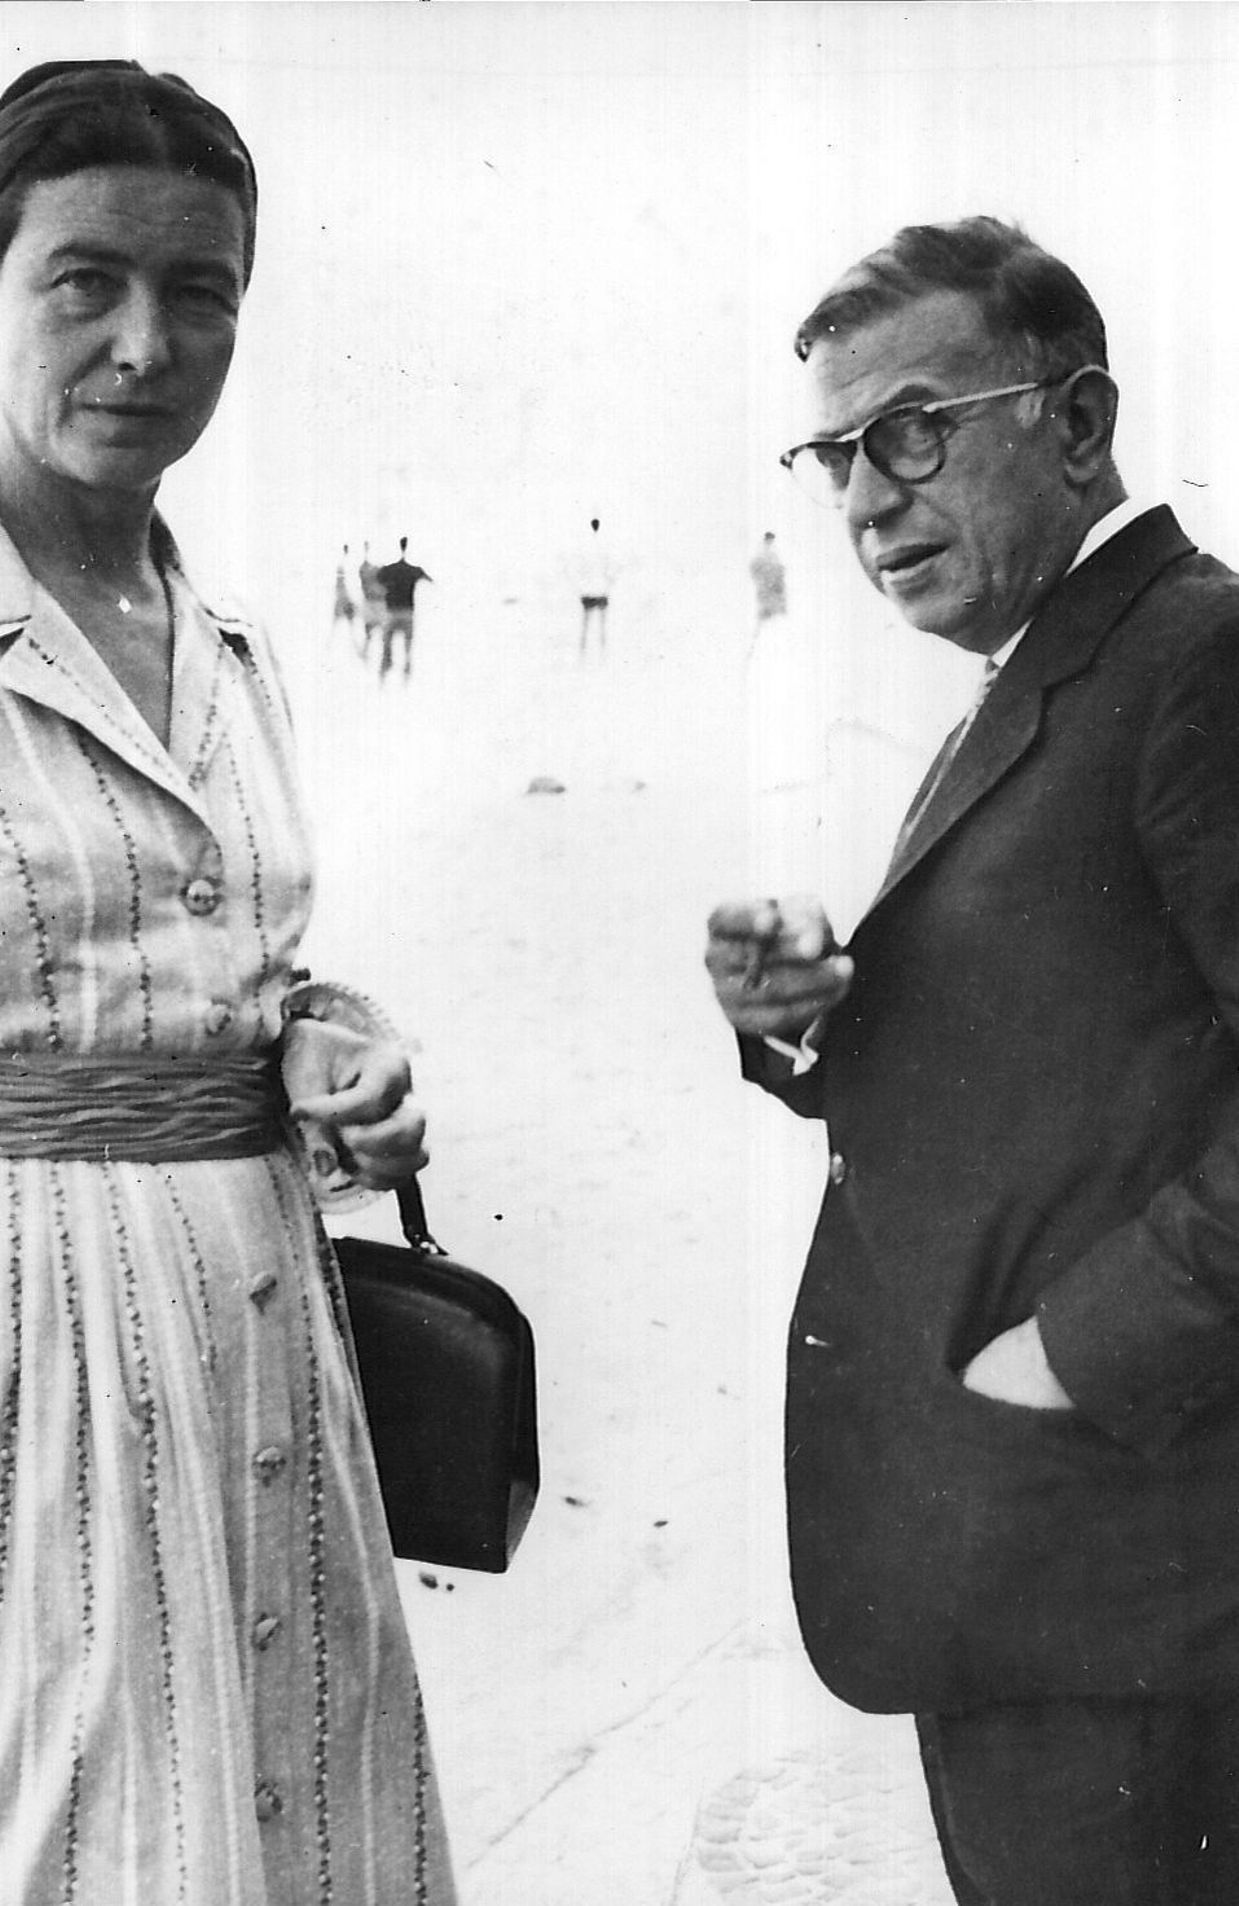 Socialisme Het strand Netjes Le saviez-vous : Simone de Beauvoir avait conclu un pacte amoureux avec  Sartre - rtbf.be